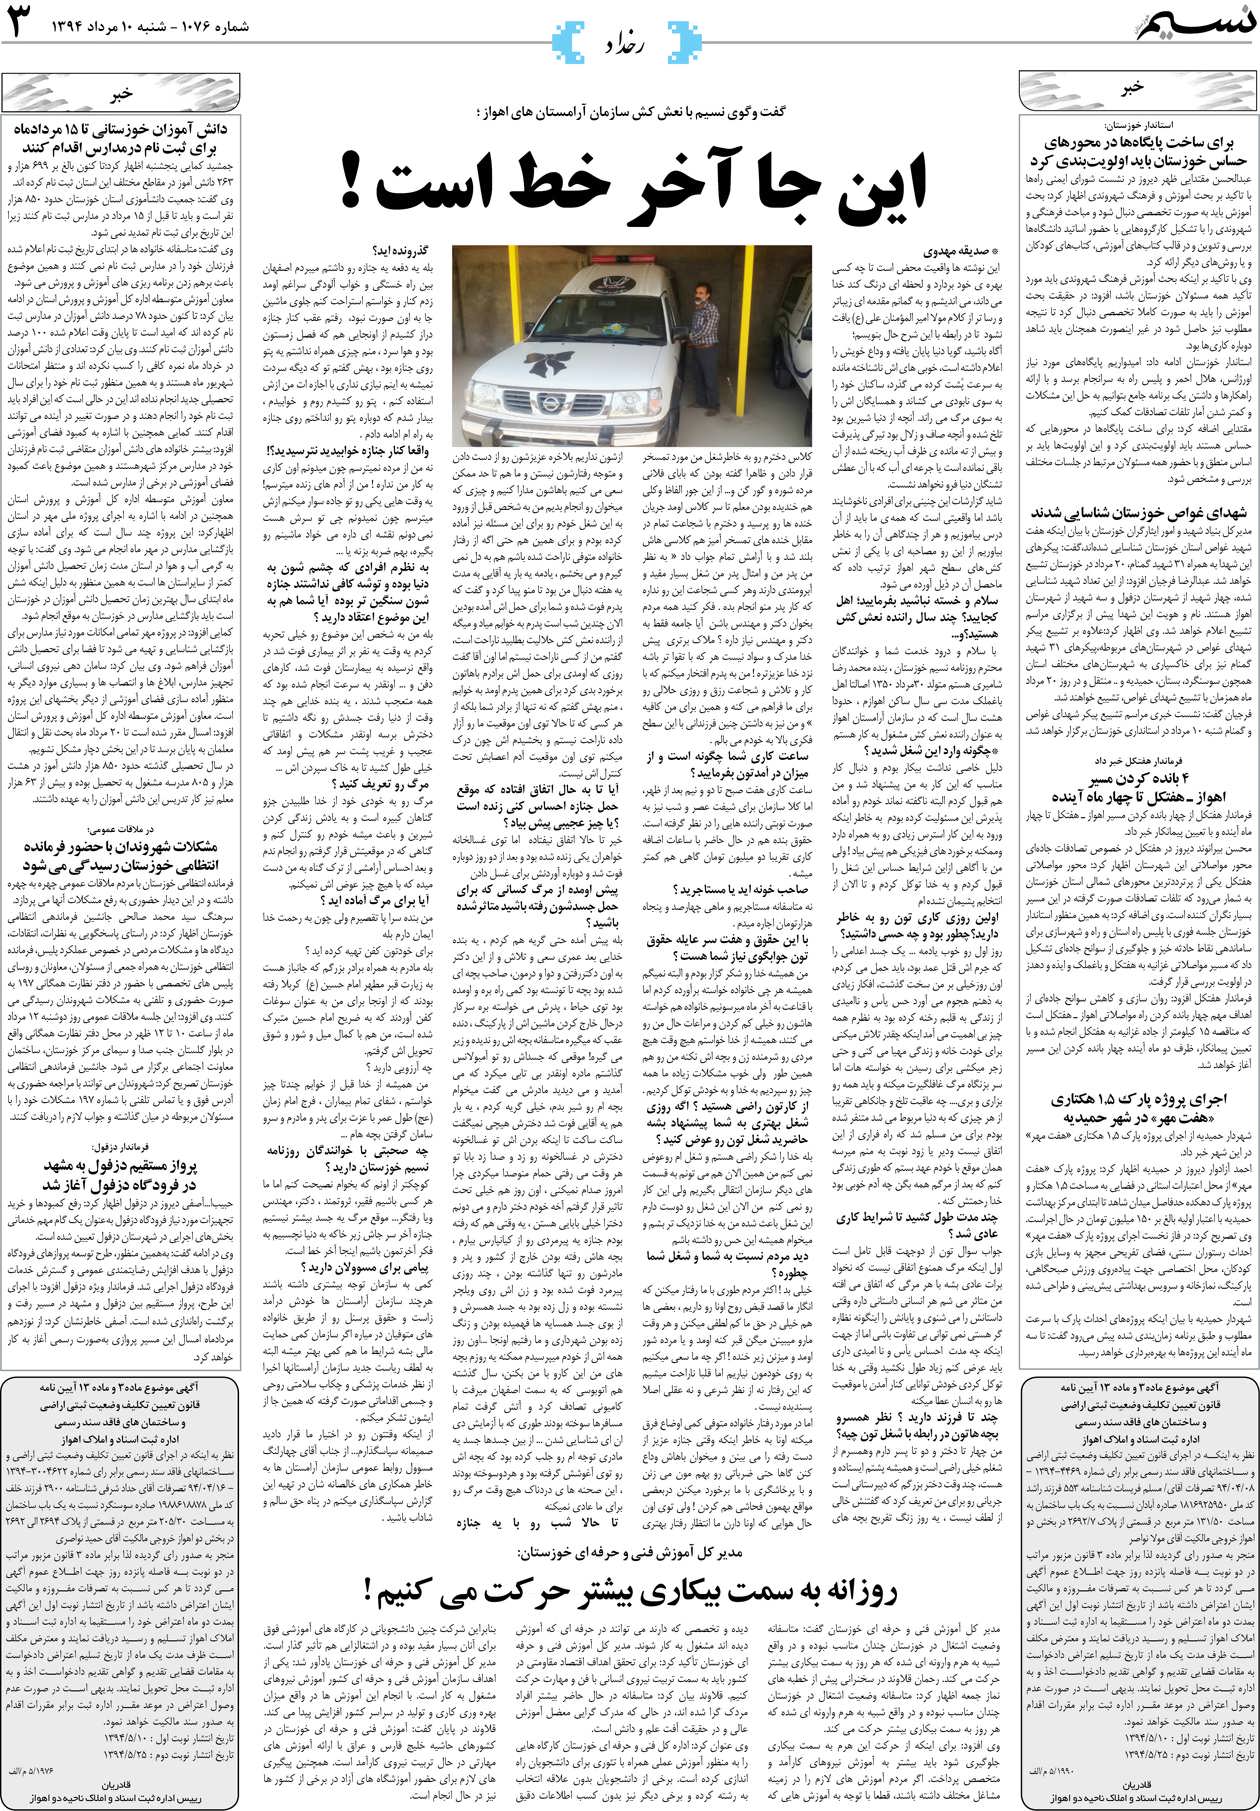 صفحه رخداد روزنامه نسیم شماره 1076